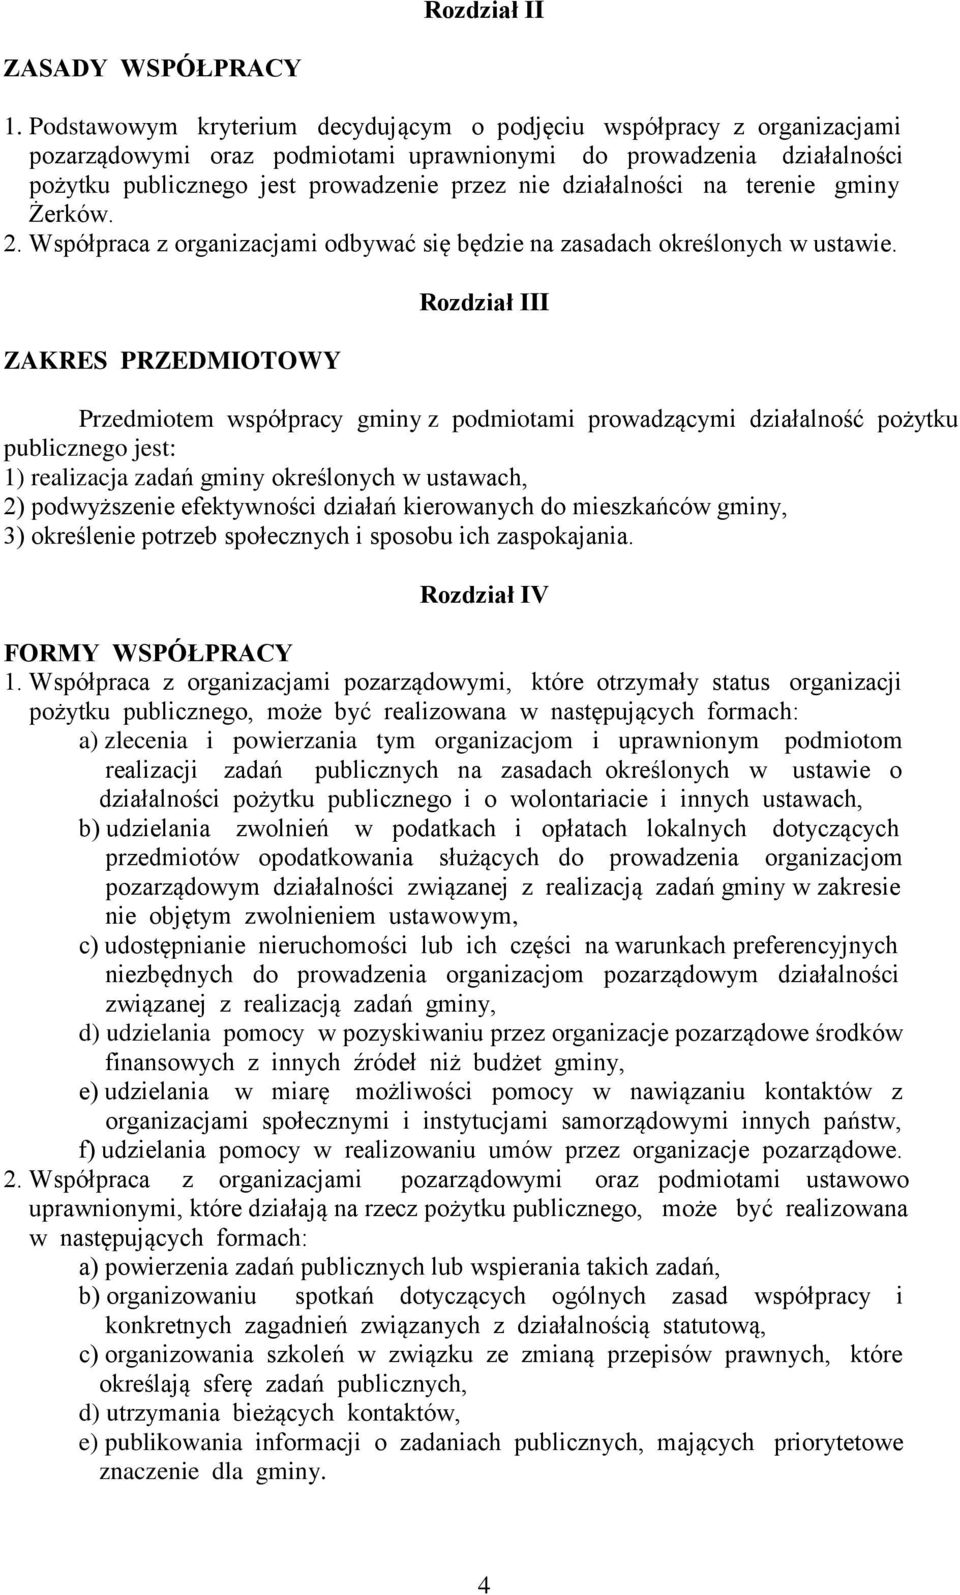 działalności na terenie gminy Żerków. 2. Współpraca z organizacjami odbywać się będzie na zasadach określonych w ustawie.